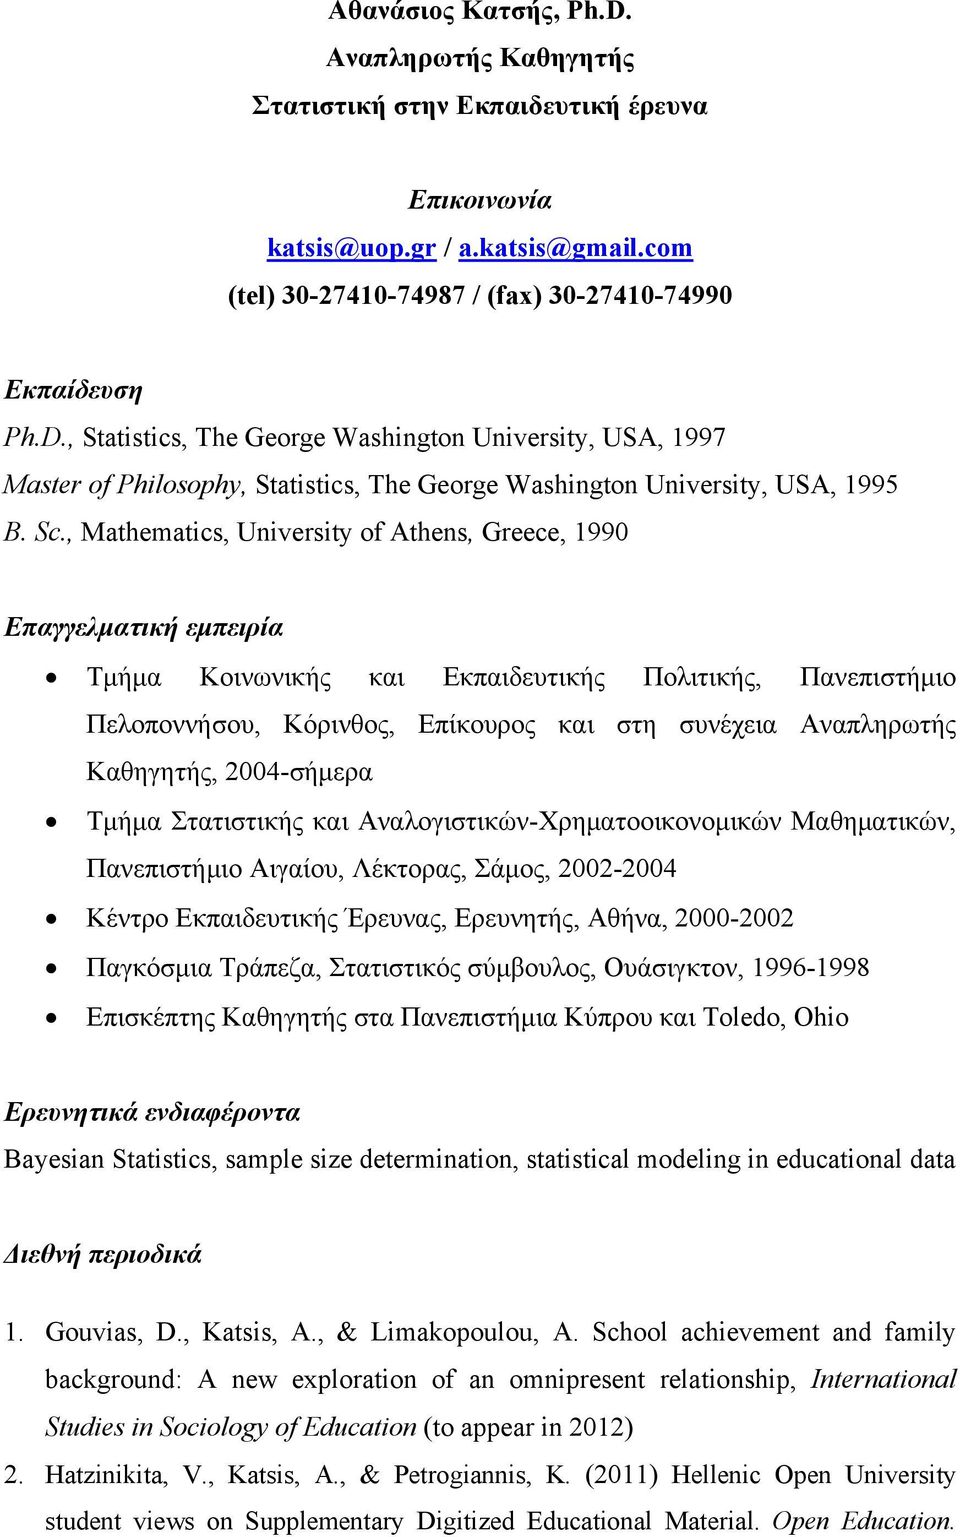 Καθηγητής, 2004-σήμερα Τμήμα Στατιστικής και Αναλογιστικών-Χρηματοοικονομικών Μαθηματικών, Πανεπιστήμιο Αιγαίου, Λέκτορας, Σάμος, 2002-2004 Κέντρο Εκπαιδευτικής Έρευνας, Ερευνητής, Αθήνα, 2000-2002